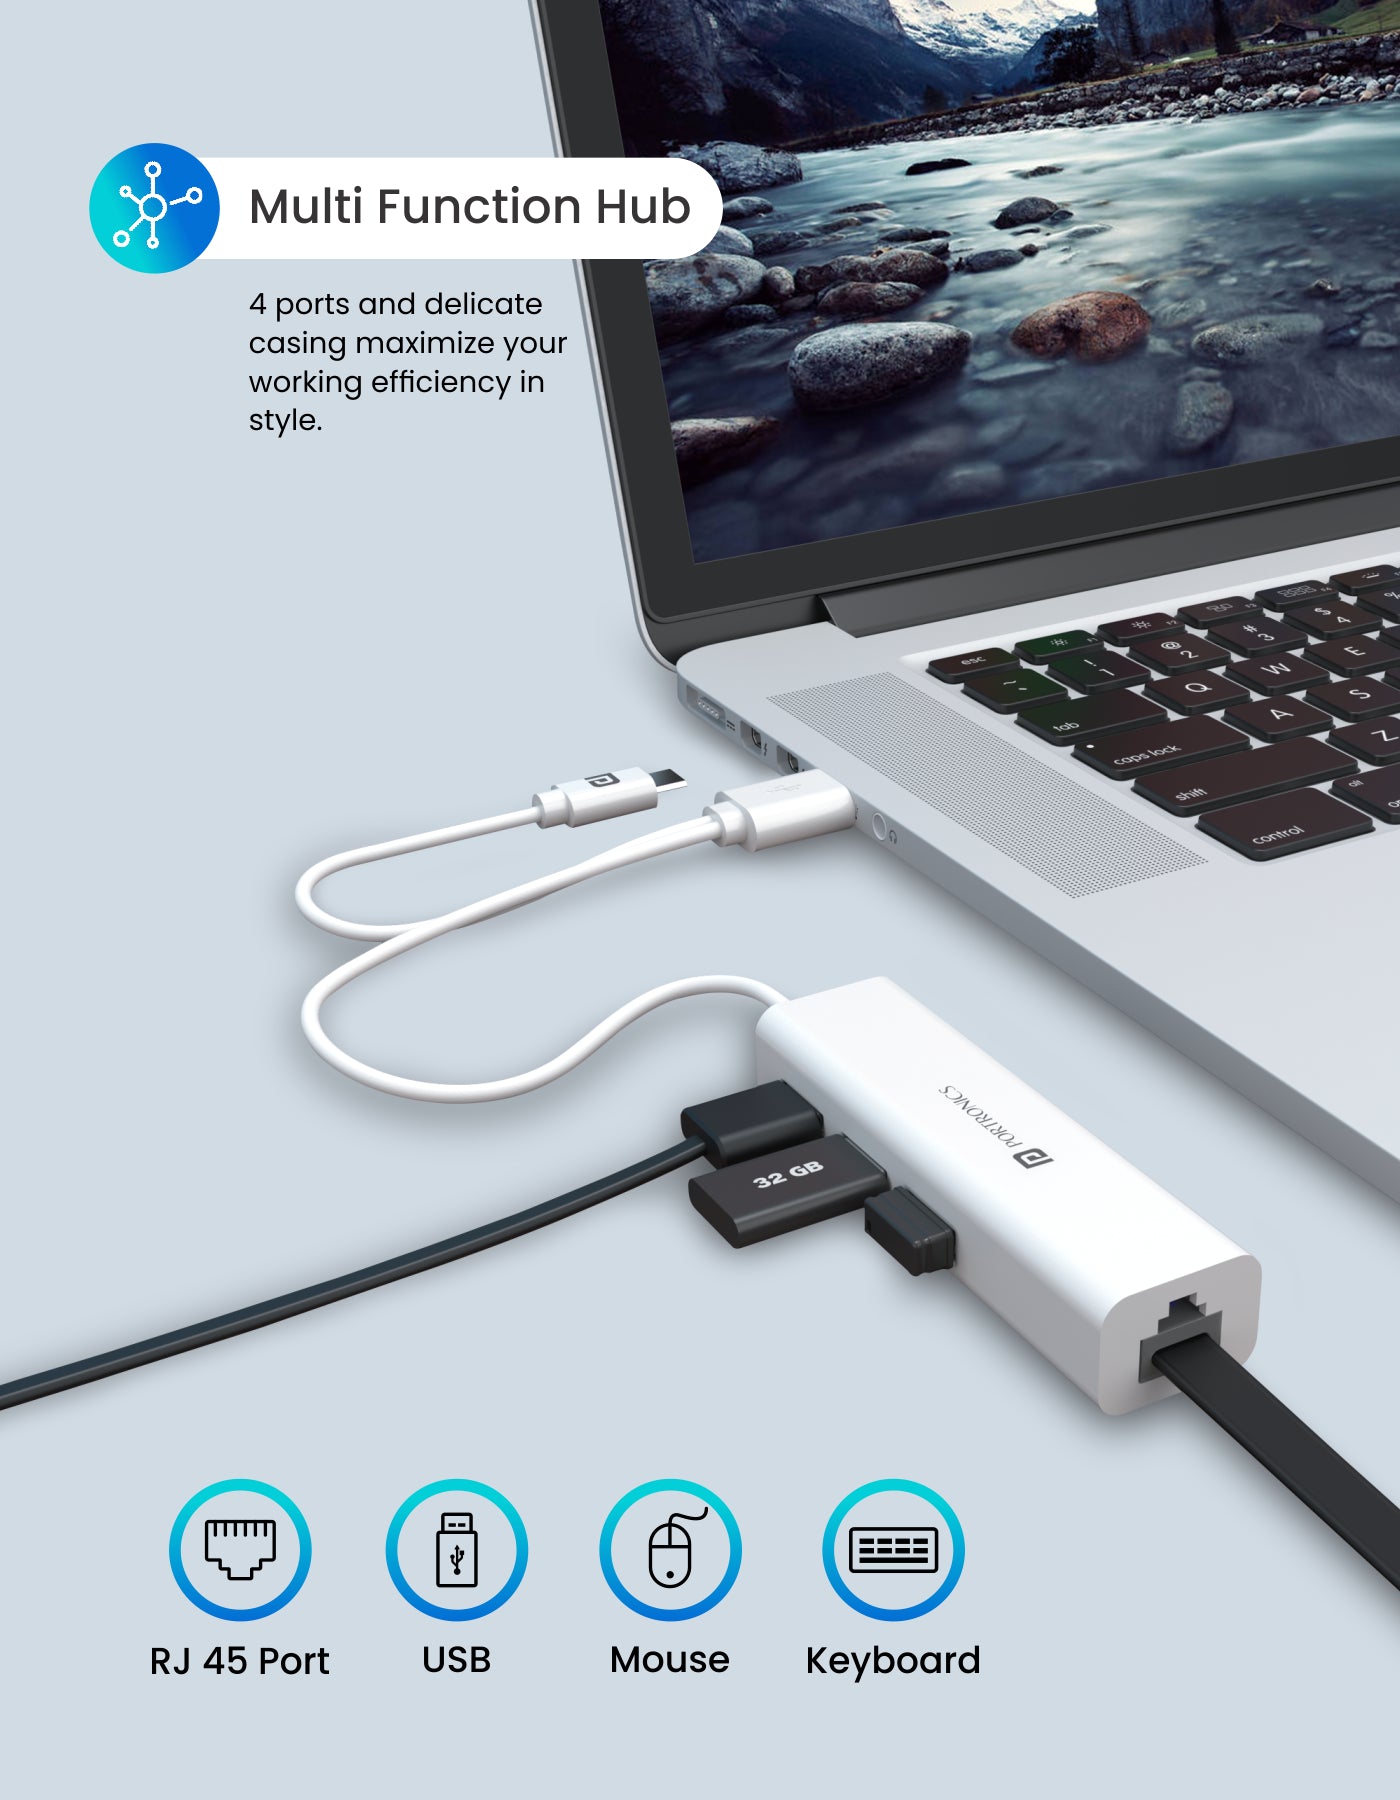 Portronics Mport 60-Multifunciton USB Hub multi function